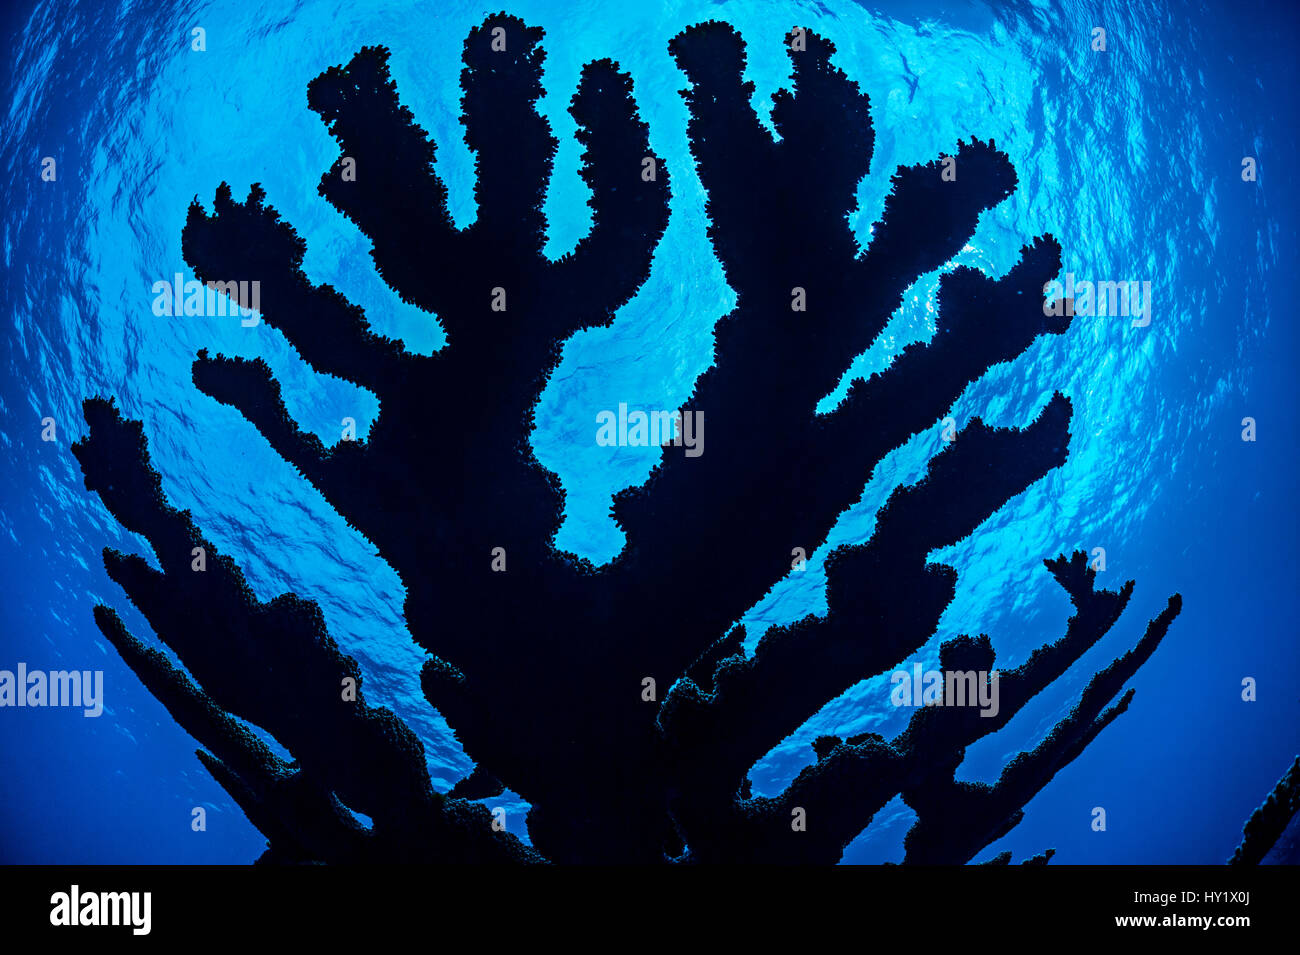 Silueta del coral cuerno de alce (Acropora palmata) creciendo en un arrecife de coral. East End, Gran Caimán, Islas Caimán. British West Indies. Mar Caribe. En peligro crítico de extinción. Foto de stock